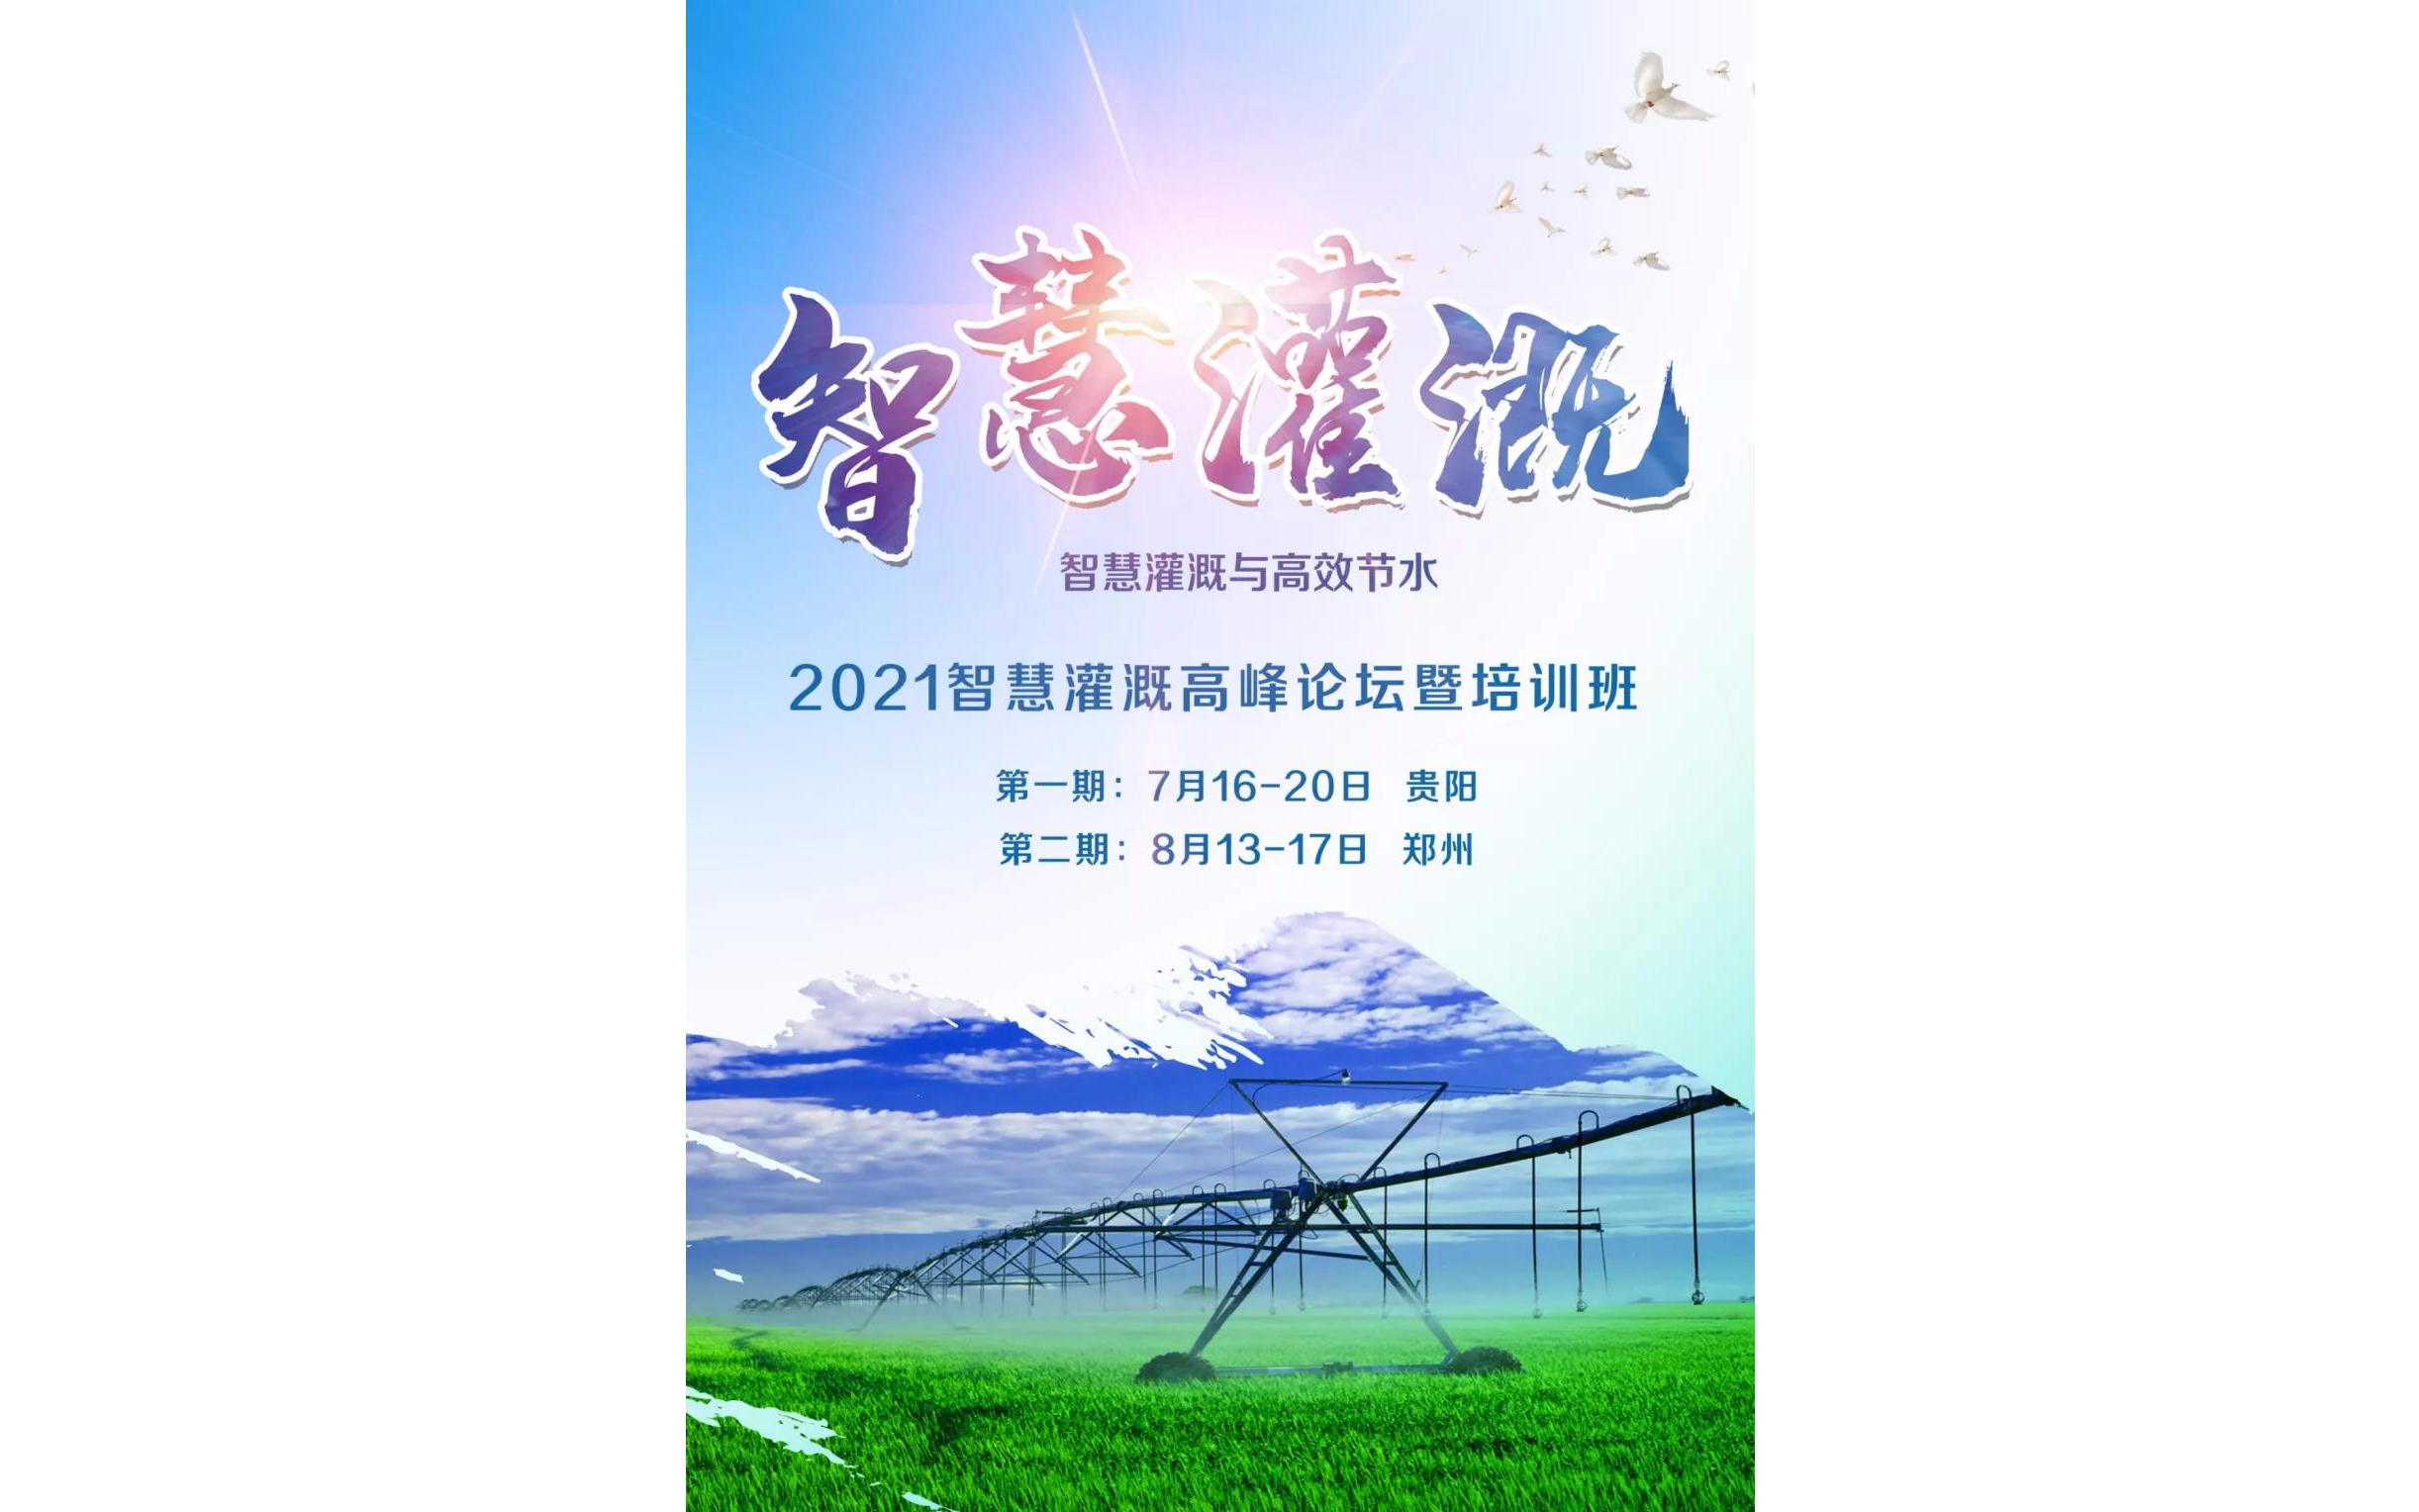 2021智慧灌溉高峰论坛